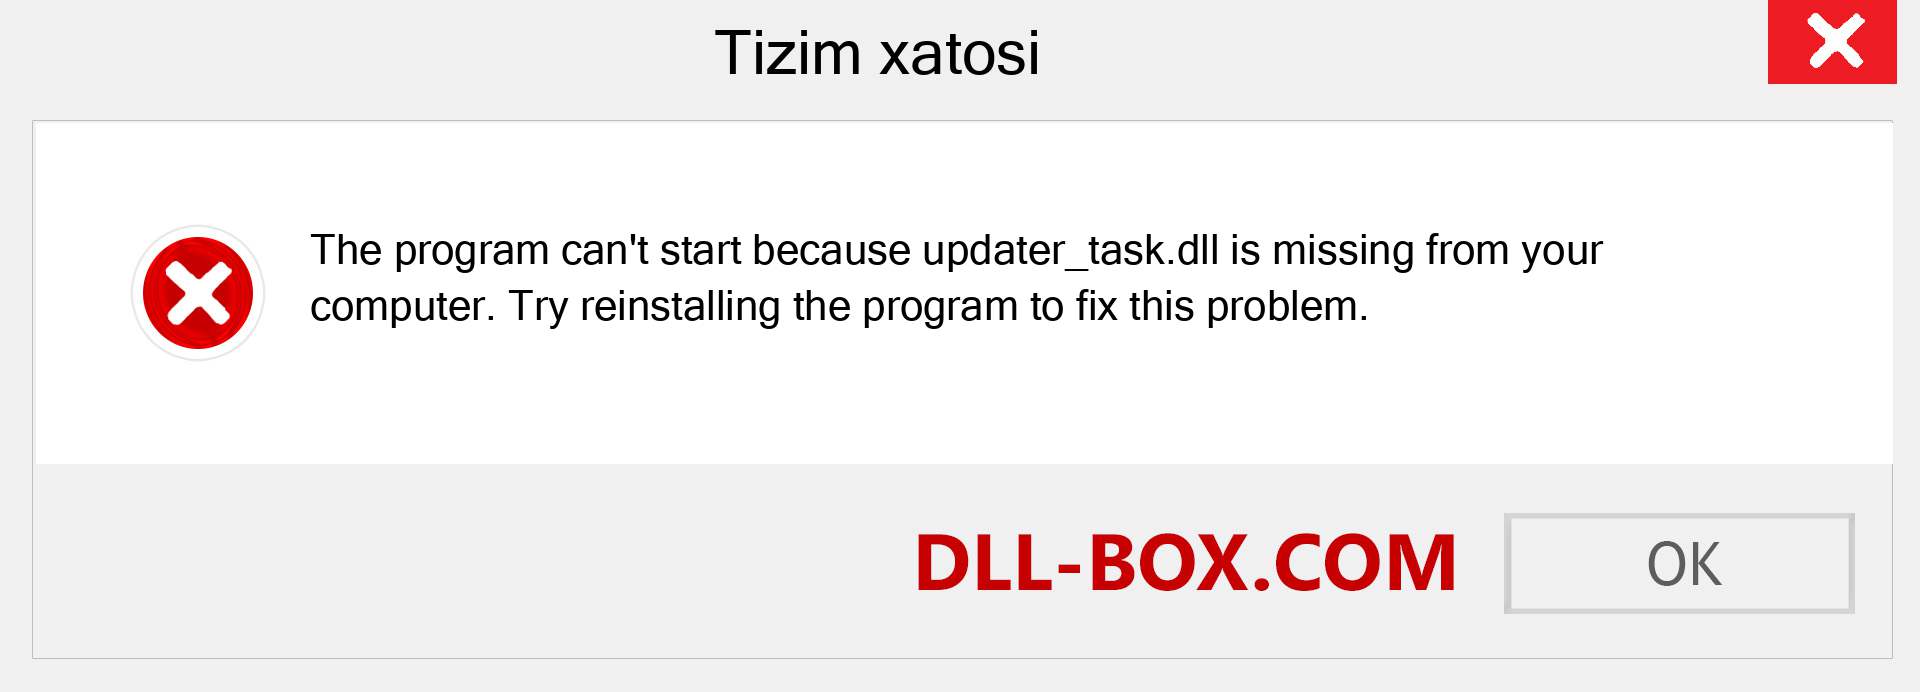 updater_task.dll fayli yo'qolganmi?. Windows 7, 8, 10 uchun yuklab olish - Windowsda updater_task dll etishmayotgan xatoni tuzating, rasmlar, rasmlar